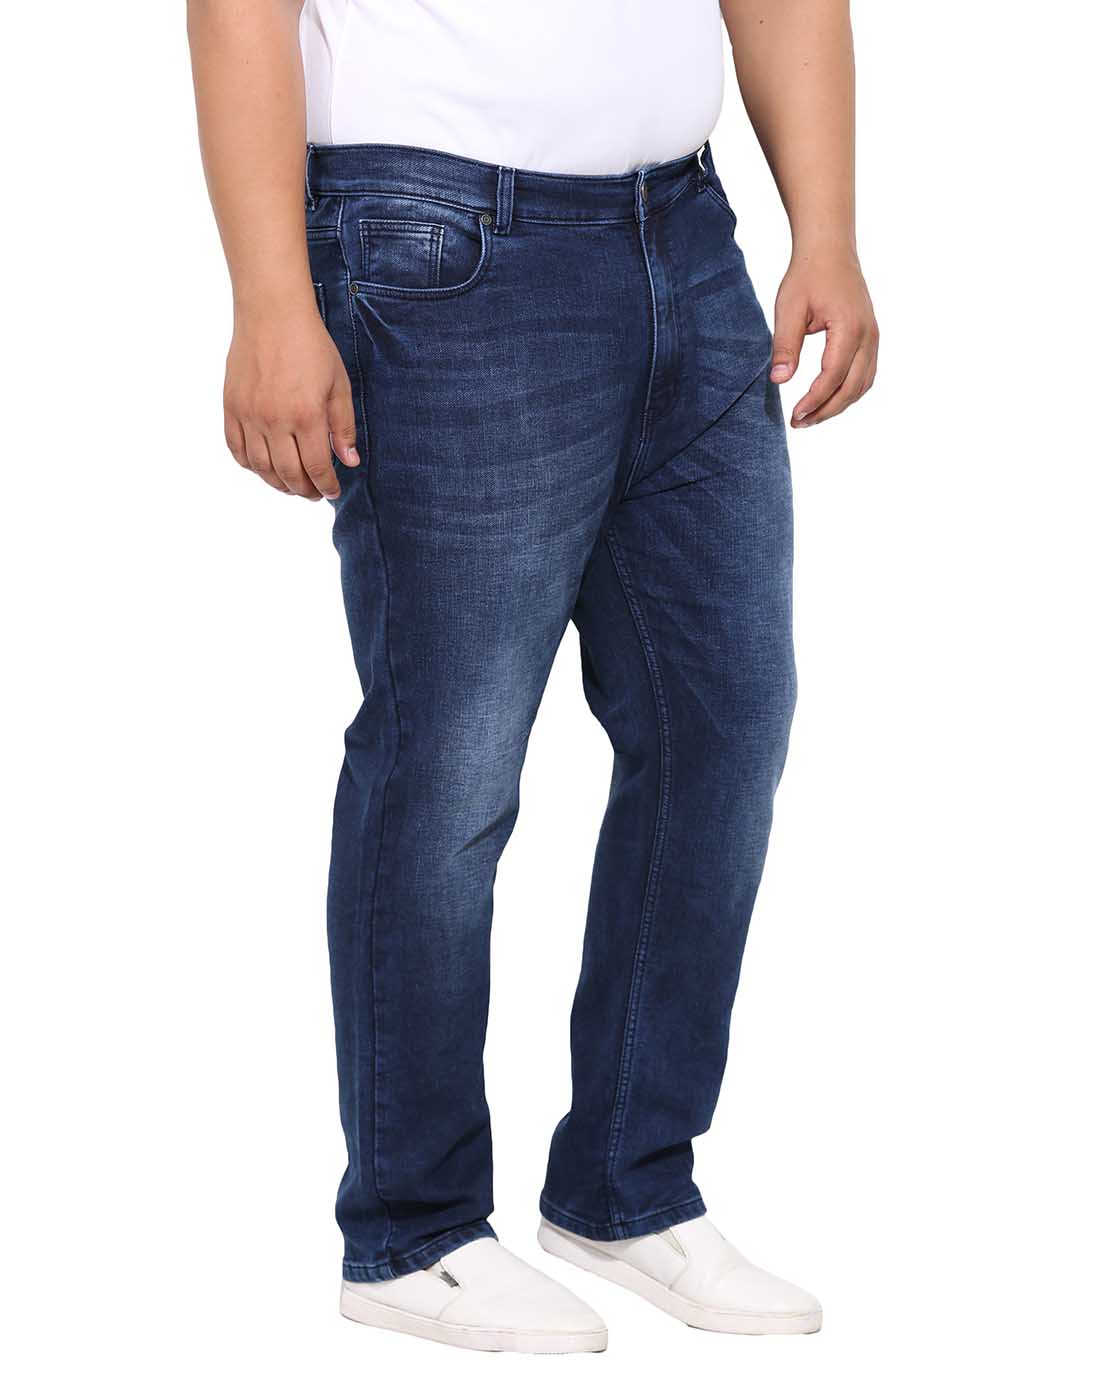 bottomwear/jeans/BEPLJPJ15151/bepljpj15151-3.jpg